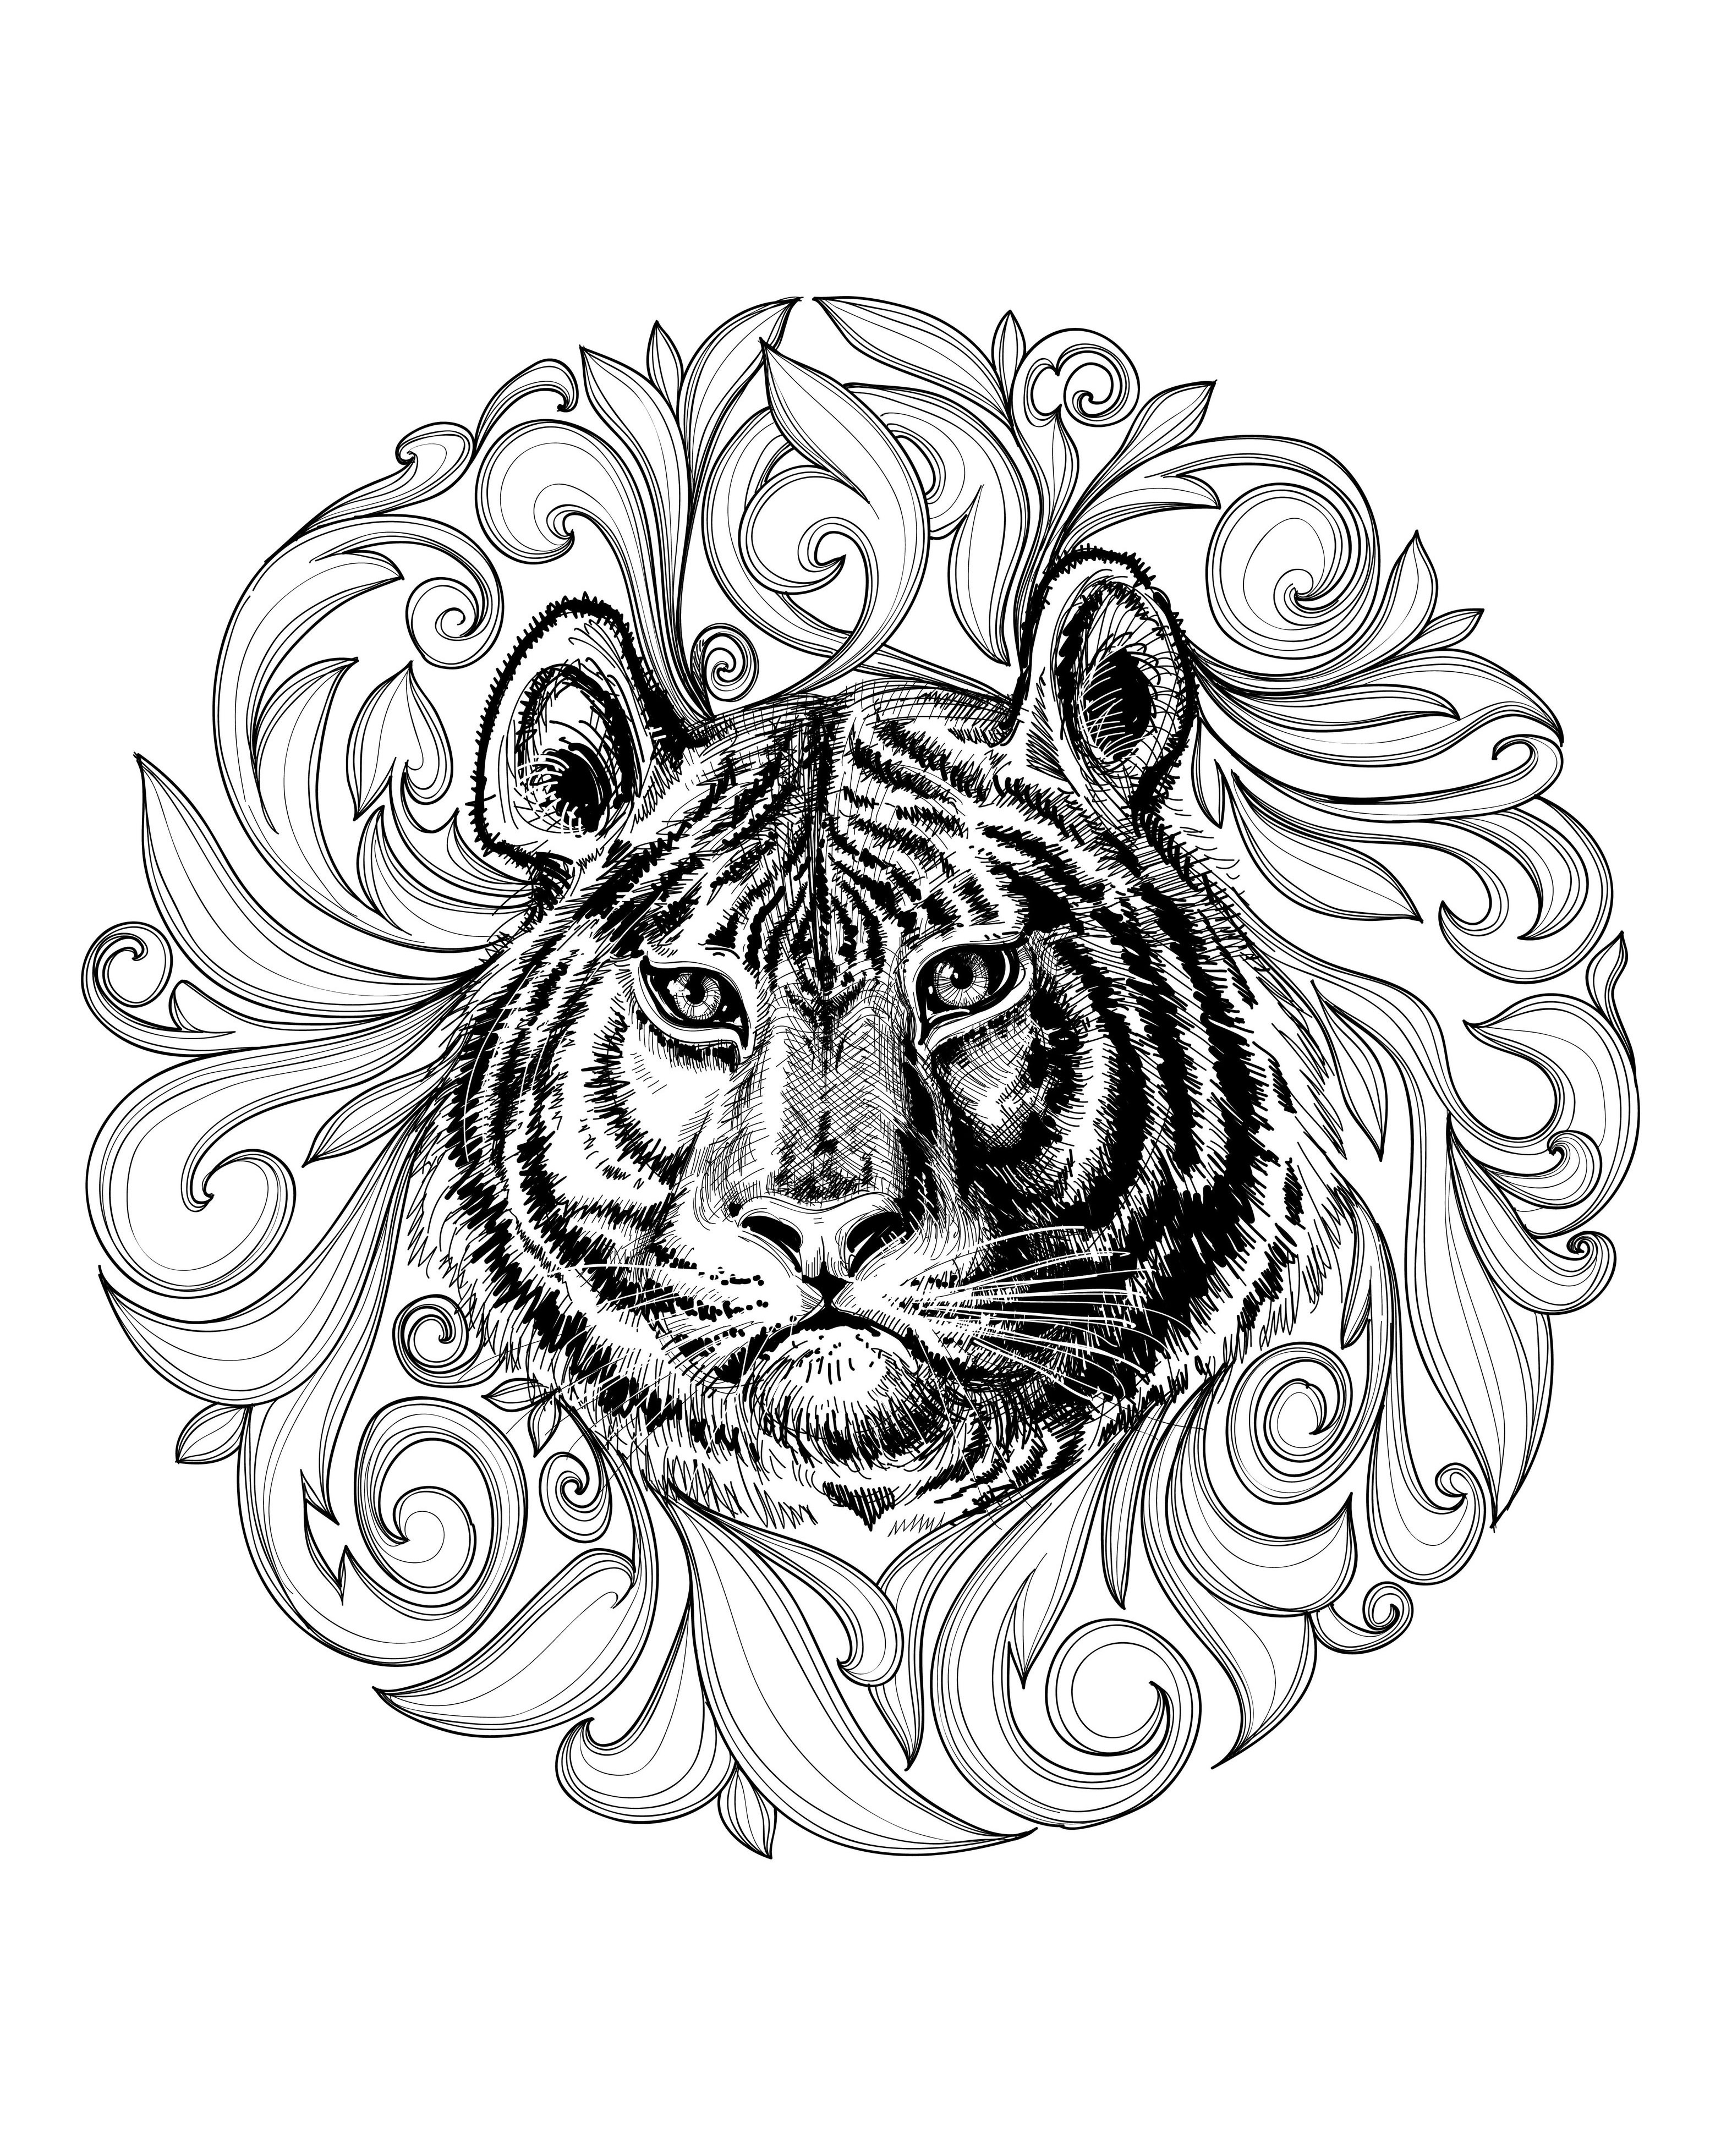 Un dessin de tigre majestueux mis en valeur par un Mandala. Le contraste entre la force du tigre et la délicatesse de ce Mandala est juste délicieux.